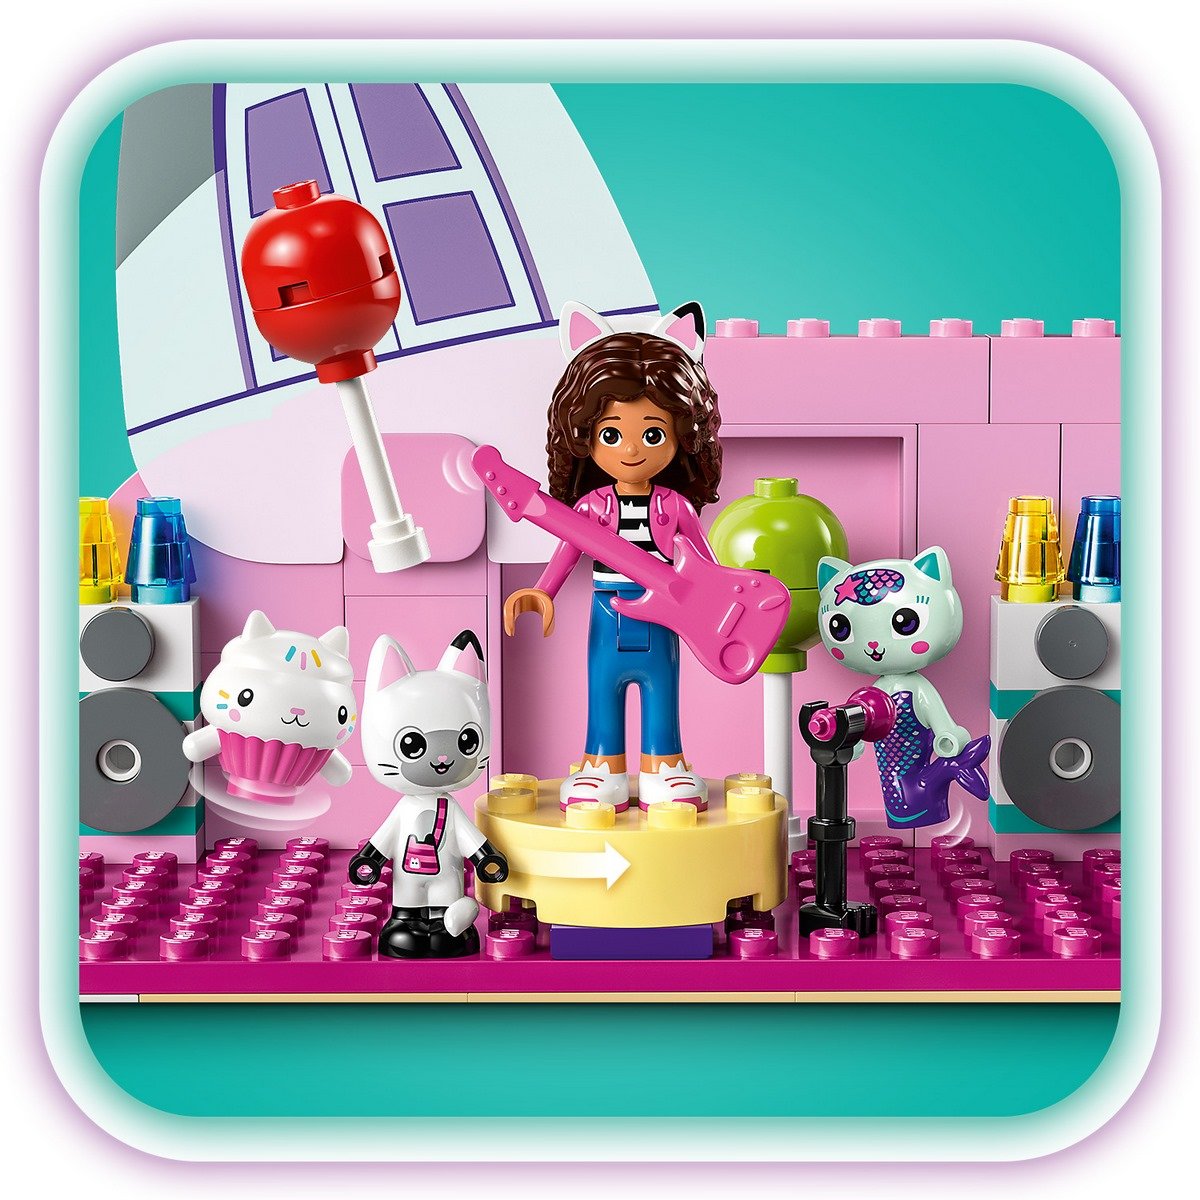 LEGO gabby et la maison magique gabby's dollhouse - Lego